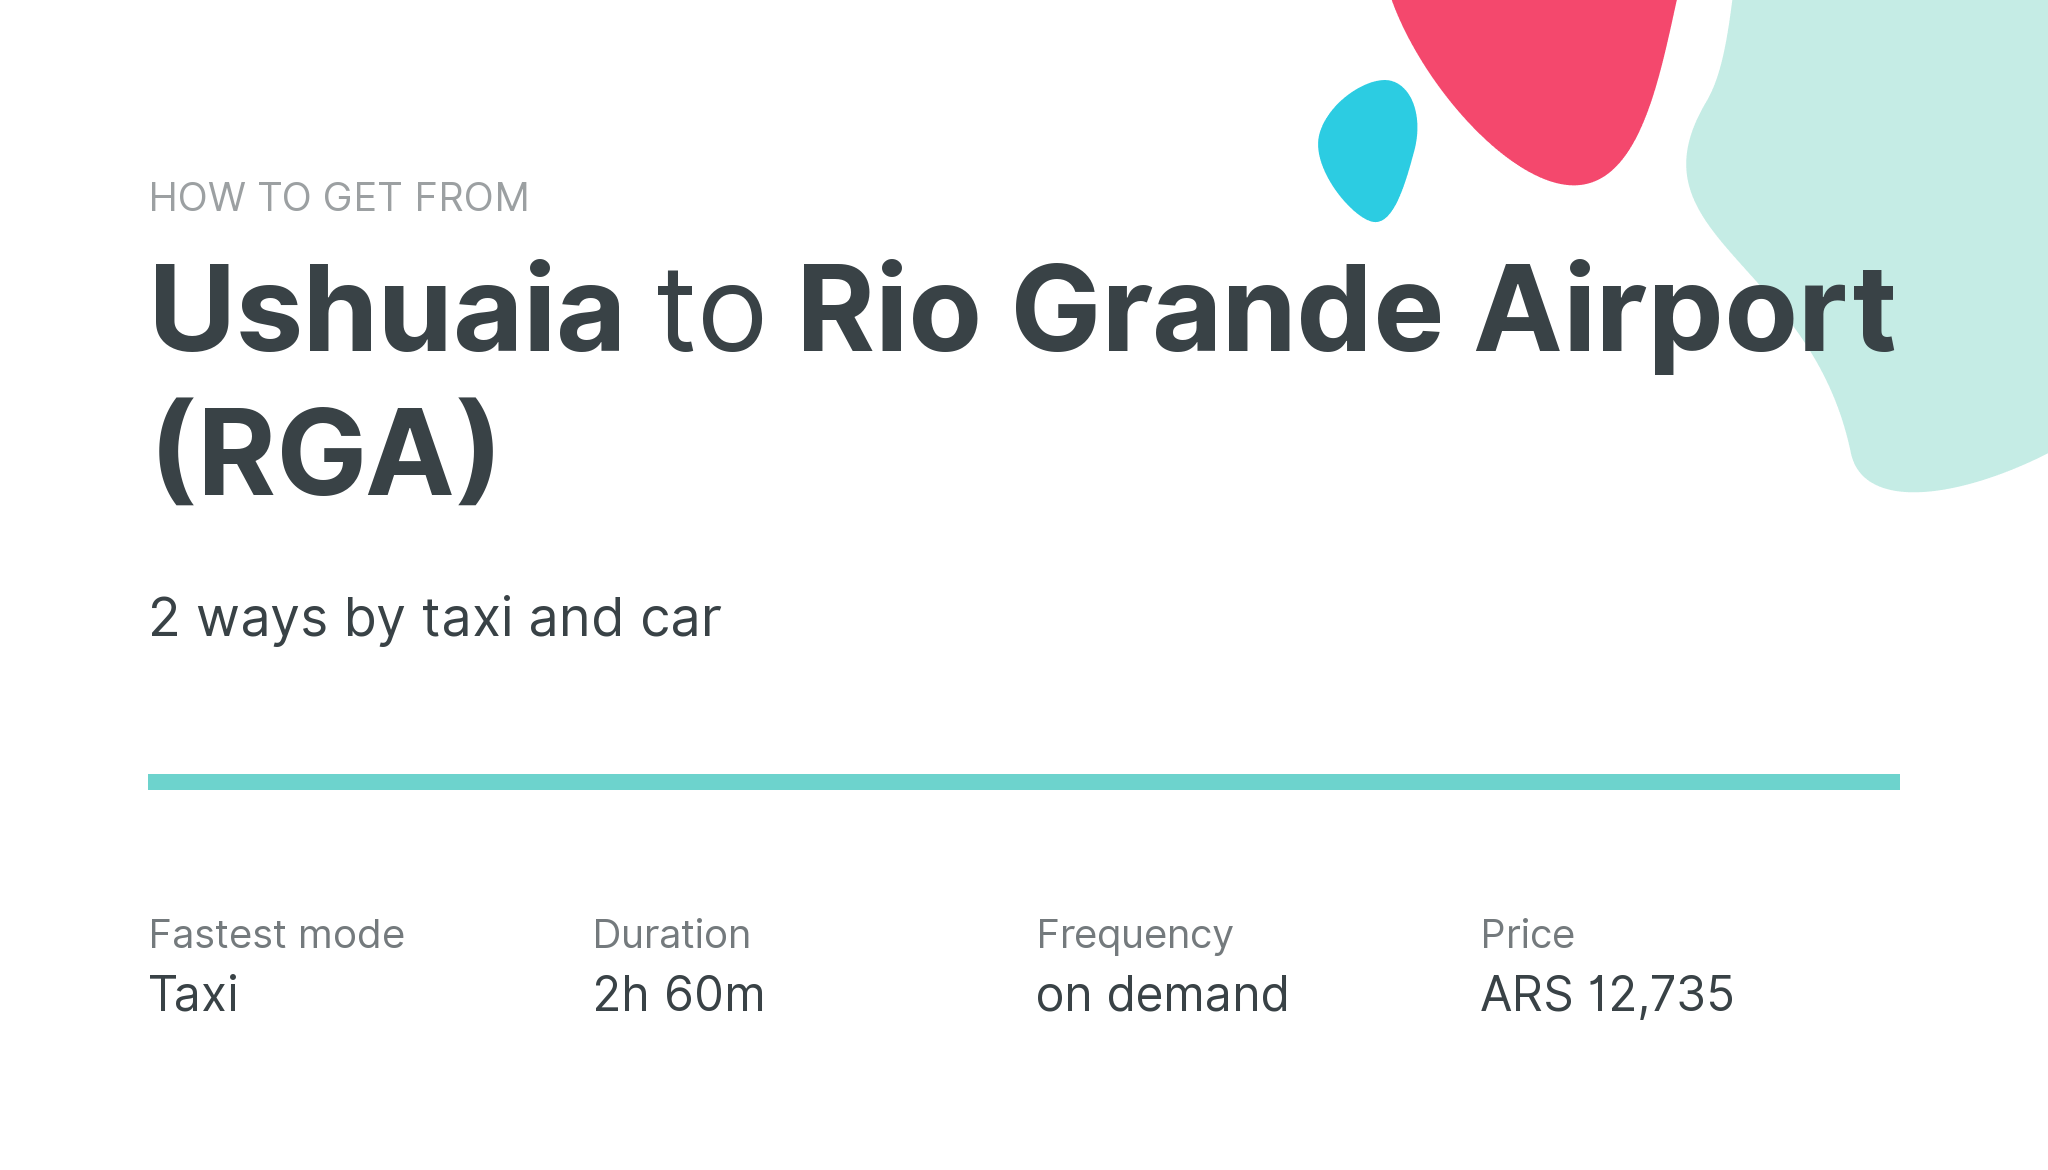 How do I get from Ushuaia to Rio Grande Airport (RGA)